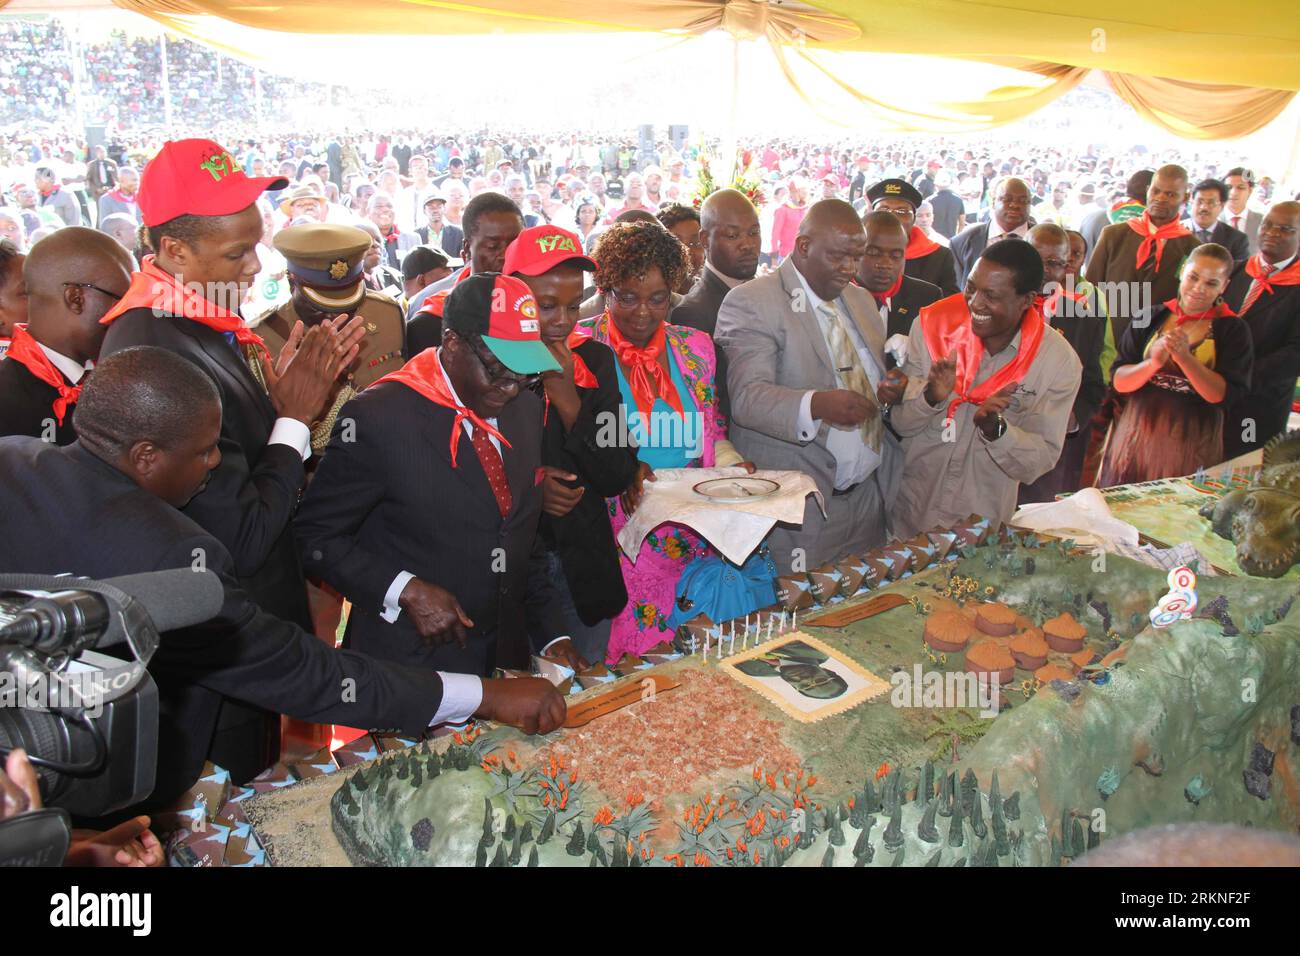 Bildnummer : 57108122 Datum : 25.02.2012 Copyright : imago/Xinhua (120225) -- HARARE, 25 février 2012 (Xinhua) -- le président zimbabwéen Robert Mugabe voit son gâteau d'anniversaire lors d'un rassemblement pour célébrer son 88e anniversaire, dans la ville orientale de Mutare, le 25 février 2012. (Xinhua/Li Ping) (zx) ZIMBABWE-MUGABE-BIRTHDAY PUBLICATIONxNOTxINxCHN People Politik xdp x0x 2012 quer 57108122 Date 25 02 2012 Copyright Imago XINHUA Harare février 25 2012 le président zimbabwéen de XINHUA Robert Mugabe voit son gâteau d'anniversaire lors d'un rassemblement pour célébrer son 88e anniversaire dans la ville orientale de Mutare février 25 2012 XINHUA a quitté PIN Banque D'Images